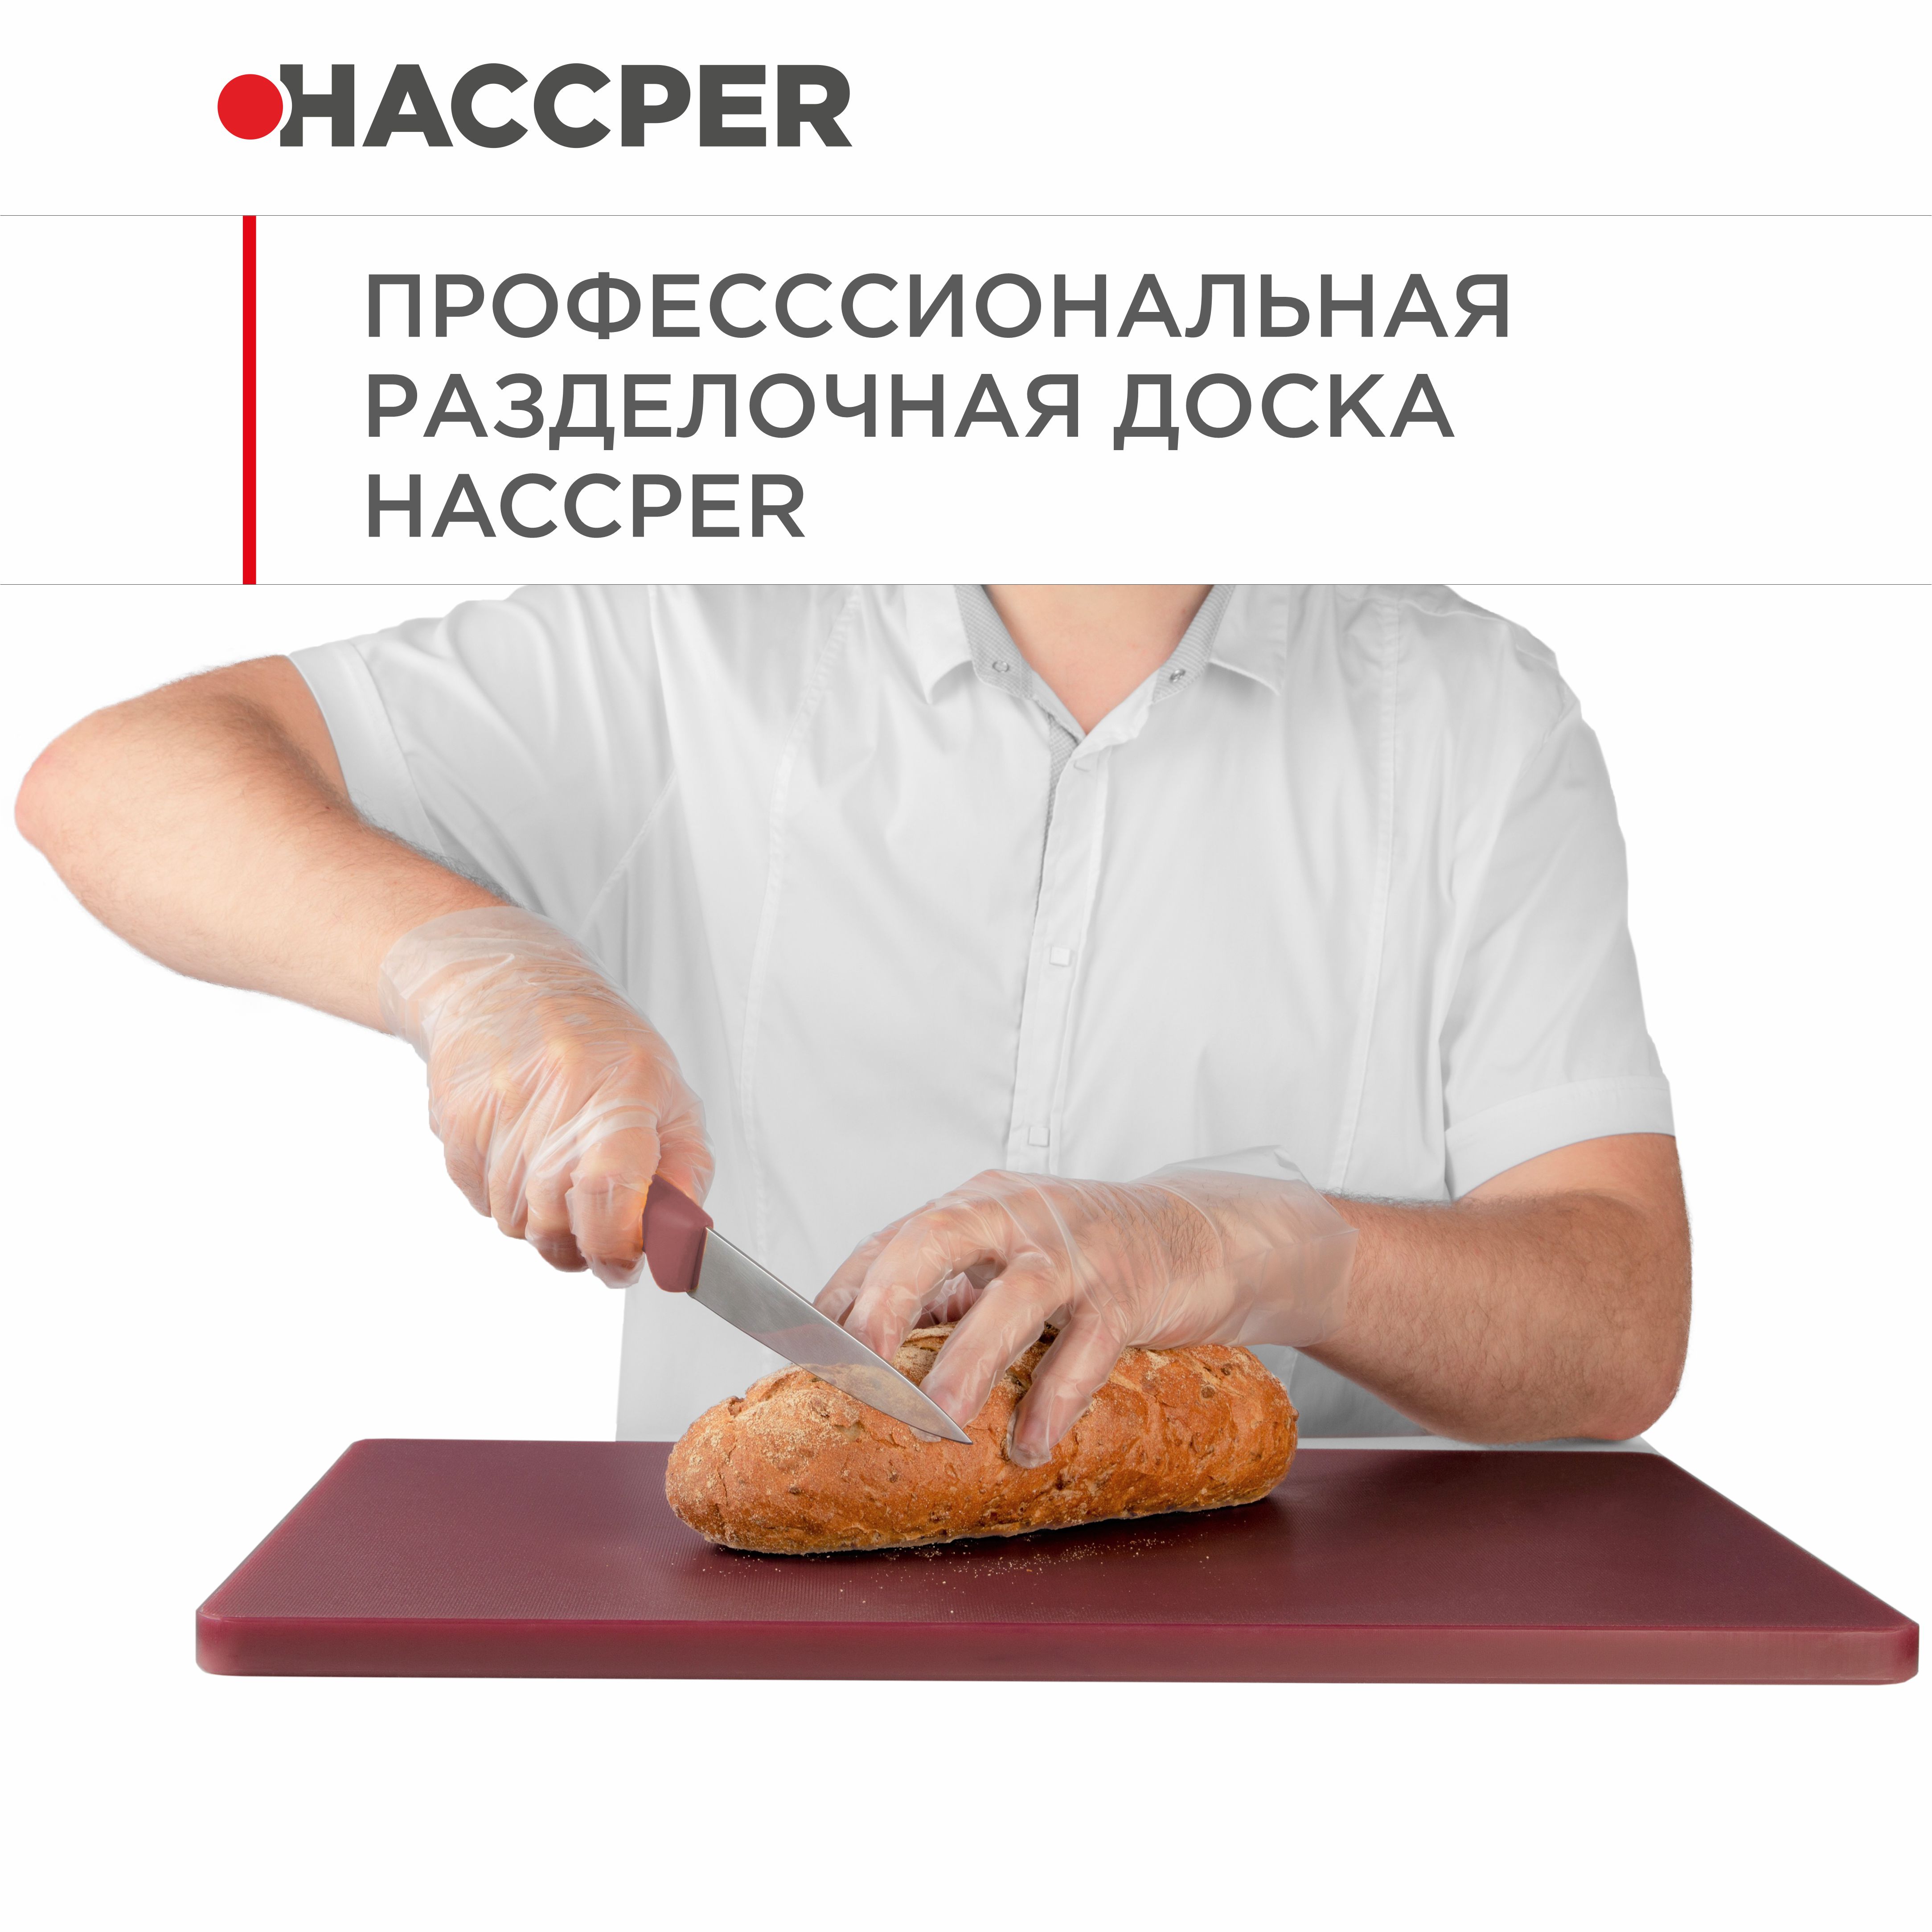 Профессиональная разделочная доска  HACCPER Gastra, коричневая